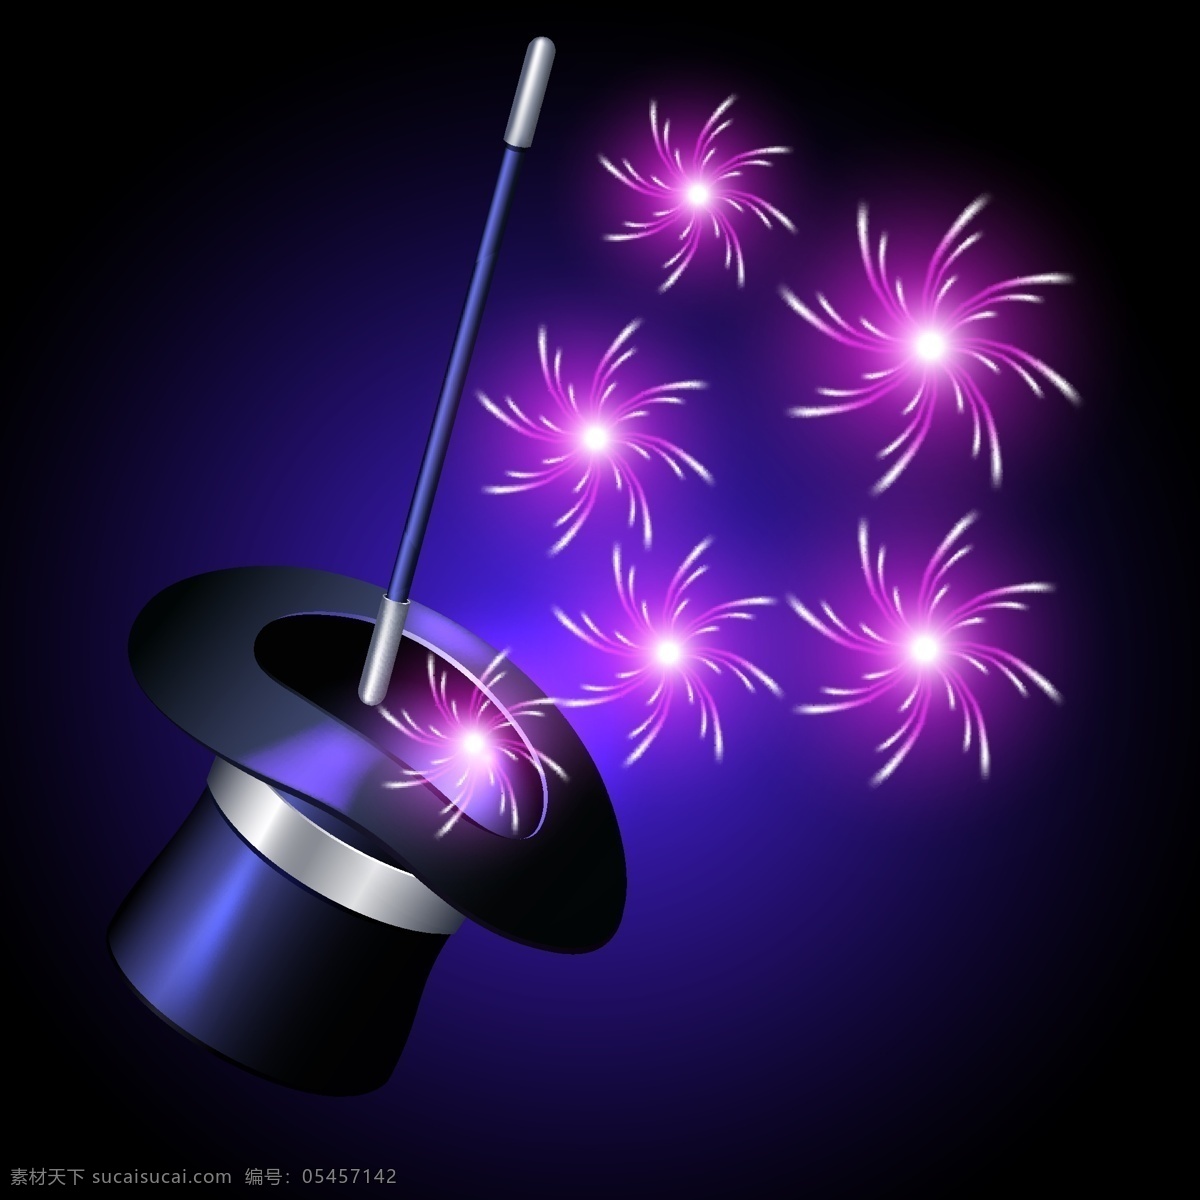 魔术 帽 中 闪耀 紫色 旋转 光效 师 黑色魔术帽 魔术棒 魔术道具 表演道具 魔术表演 魔法粒子 炫彩 烟花 节日 喜庆 文化艺术 节日庆祝